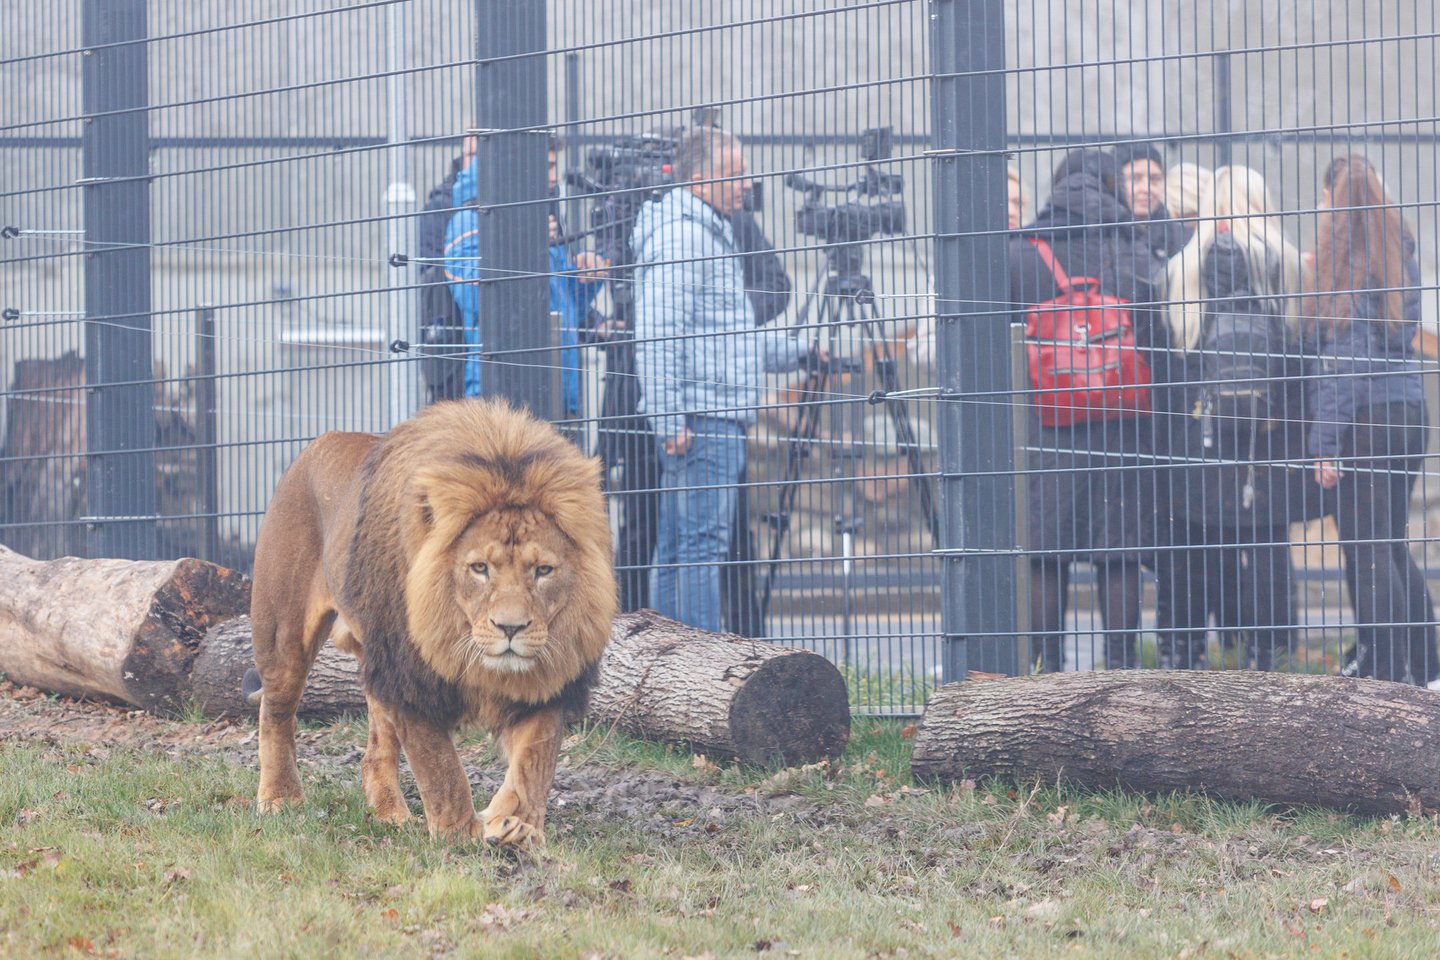 Po daugiau nei dvejus metus trukusios kapitalinės rekonstrukcijos duris oficialiai atvėrė Lietuvos zoologijos sodas.<br>R. Tenio nuotr.